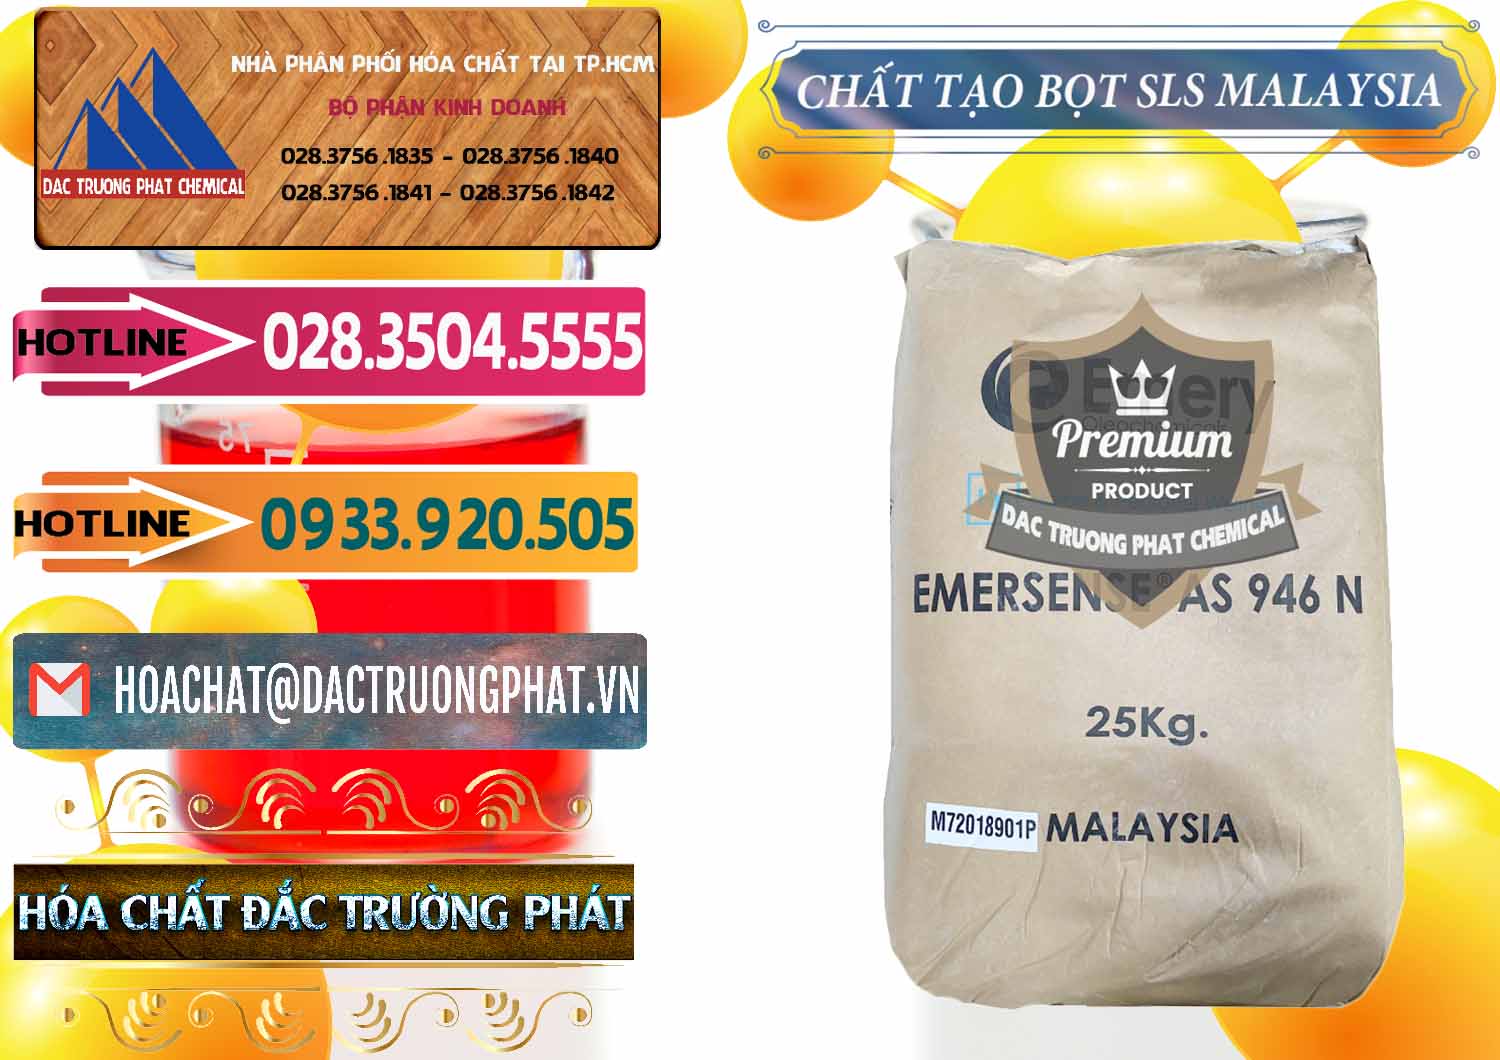 Công ty bán _ cung cấp Chất Tạo Bọt SLS Emery - Emersense AS 946N Mã Lai Malaysia - 0423 - Đơn vị chuyên phân phối & nhập khẩu hóa chất tại TP.HCM - dactruongphat.vn